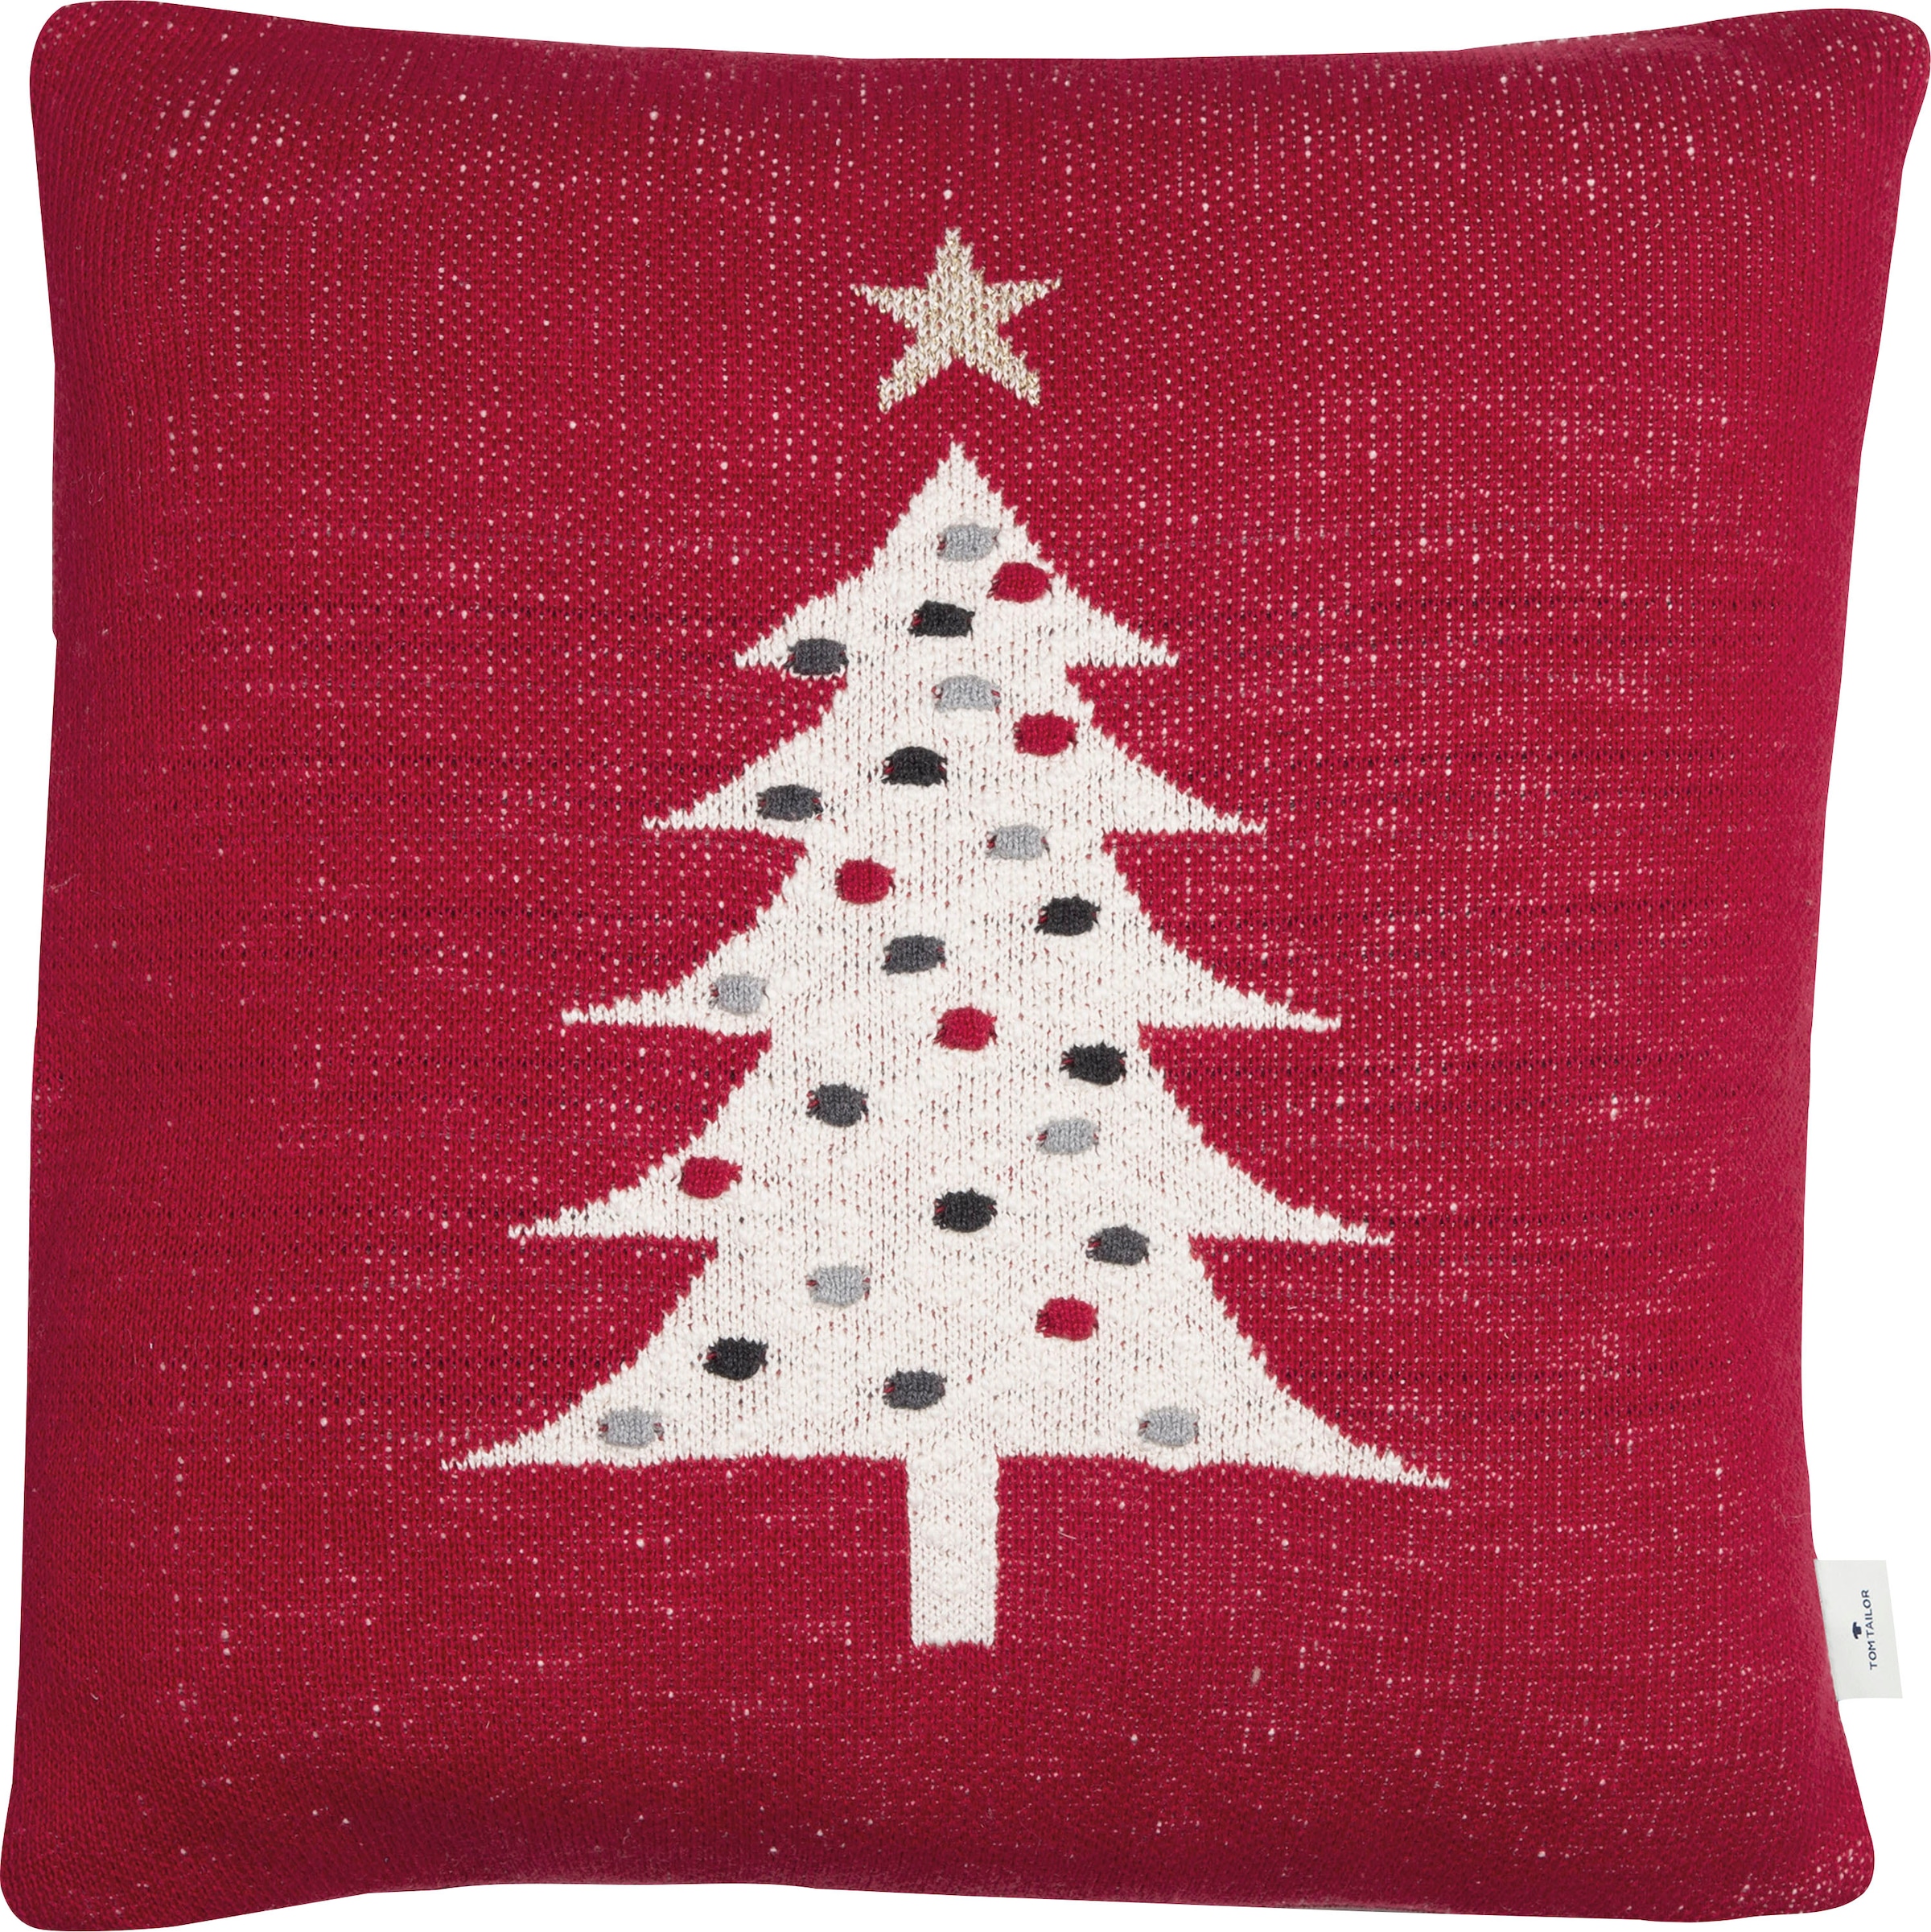 TOM TAILOR HOME Dekokissen »Knitted Red Tree«, Gestrickte Kissenhülle ohne Füllung mit Weihnachtsbaum-Motiv, 1 Stück